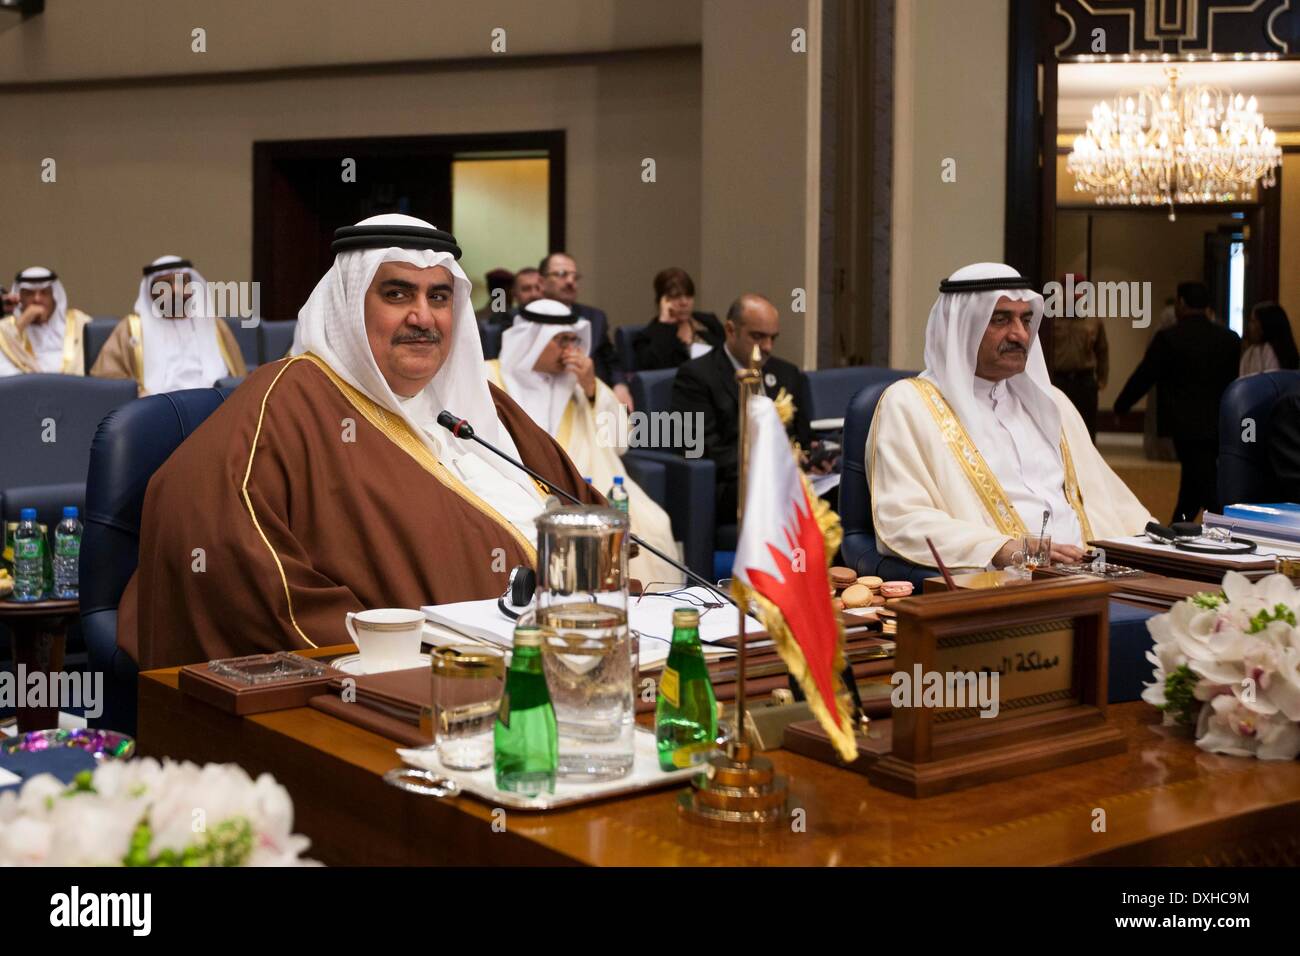 La ville de Koweït, Koweït. Mar 26, 2014. Le Ministre des affaires étrangères du Bahreïn, Sheikh Khalid bin Ahmed al Khalifa assiste à la cérémonie de clôture du 25e Sommet de la Ligue arabe dans la ville de Koweït, Koweït, le 26 mars 2014. Les dirigeants des États arabes a conclu les deux jours du sommet de la Ligue arabe avec l'annonce de Déclaration de Koweït le mercredi à Bayan Palace au Koweït. Credit : Cui Xinyu/Xinhua/Alamy Live News Banque D'Images